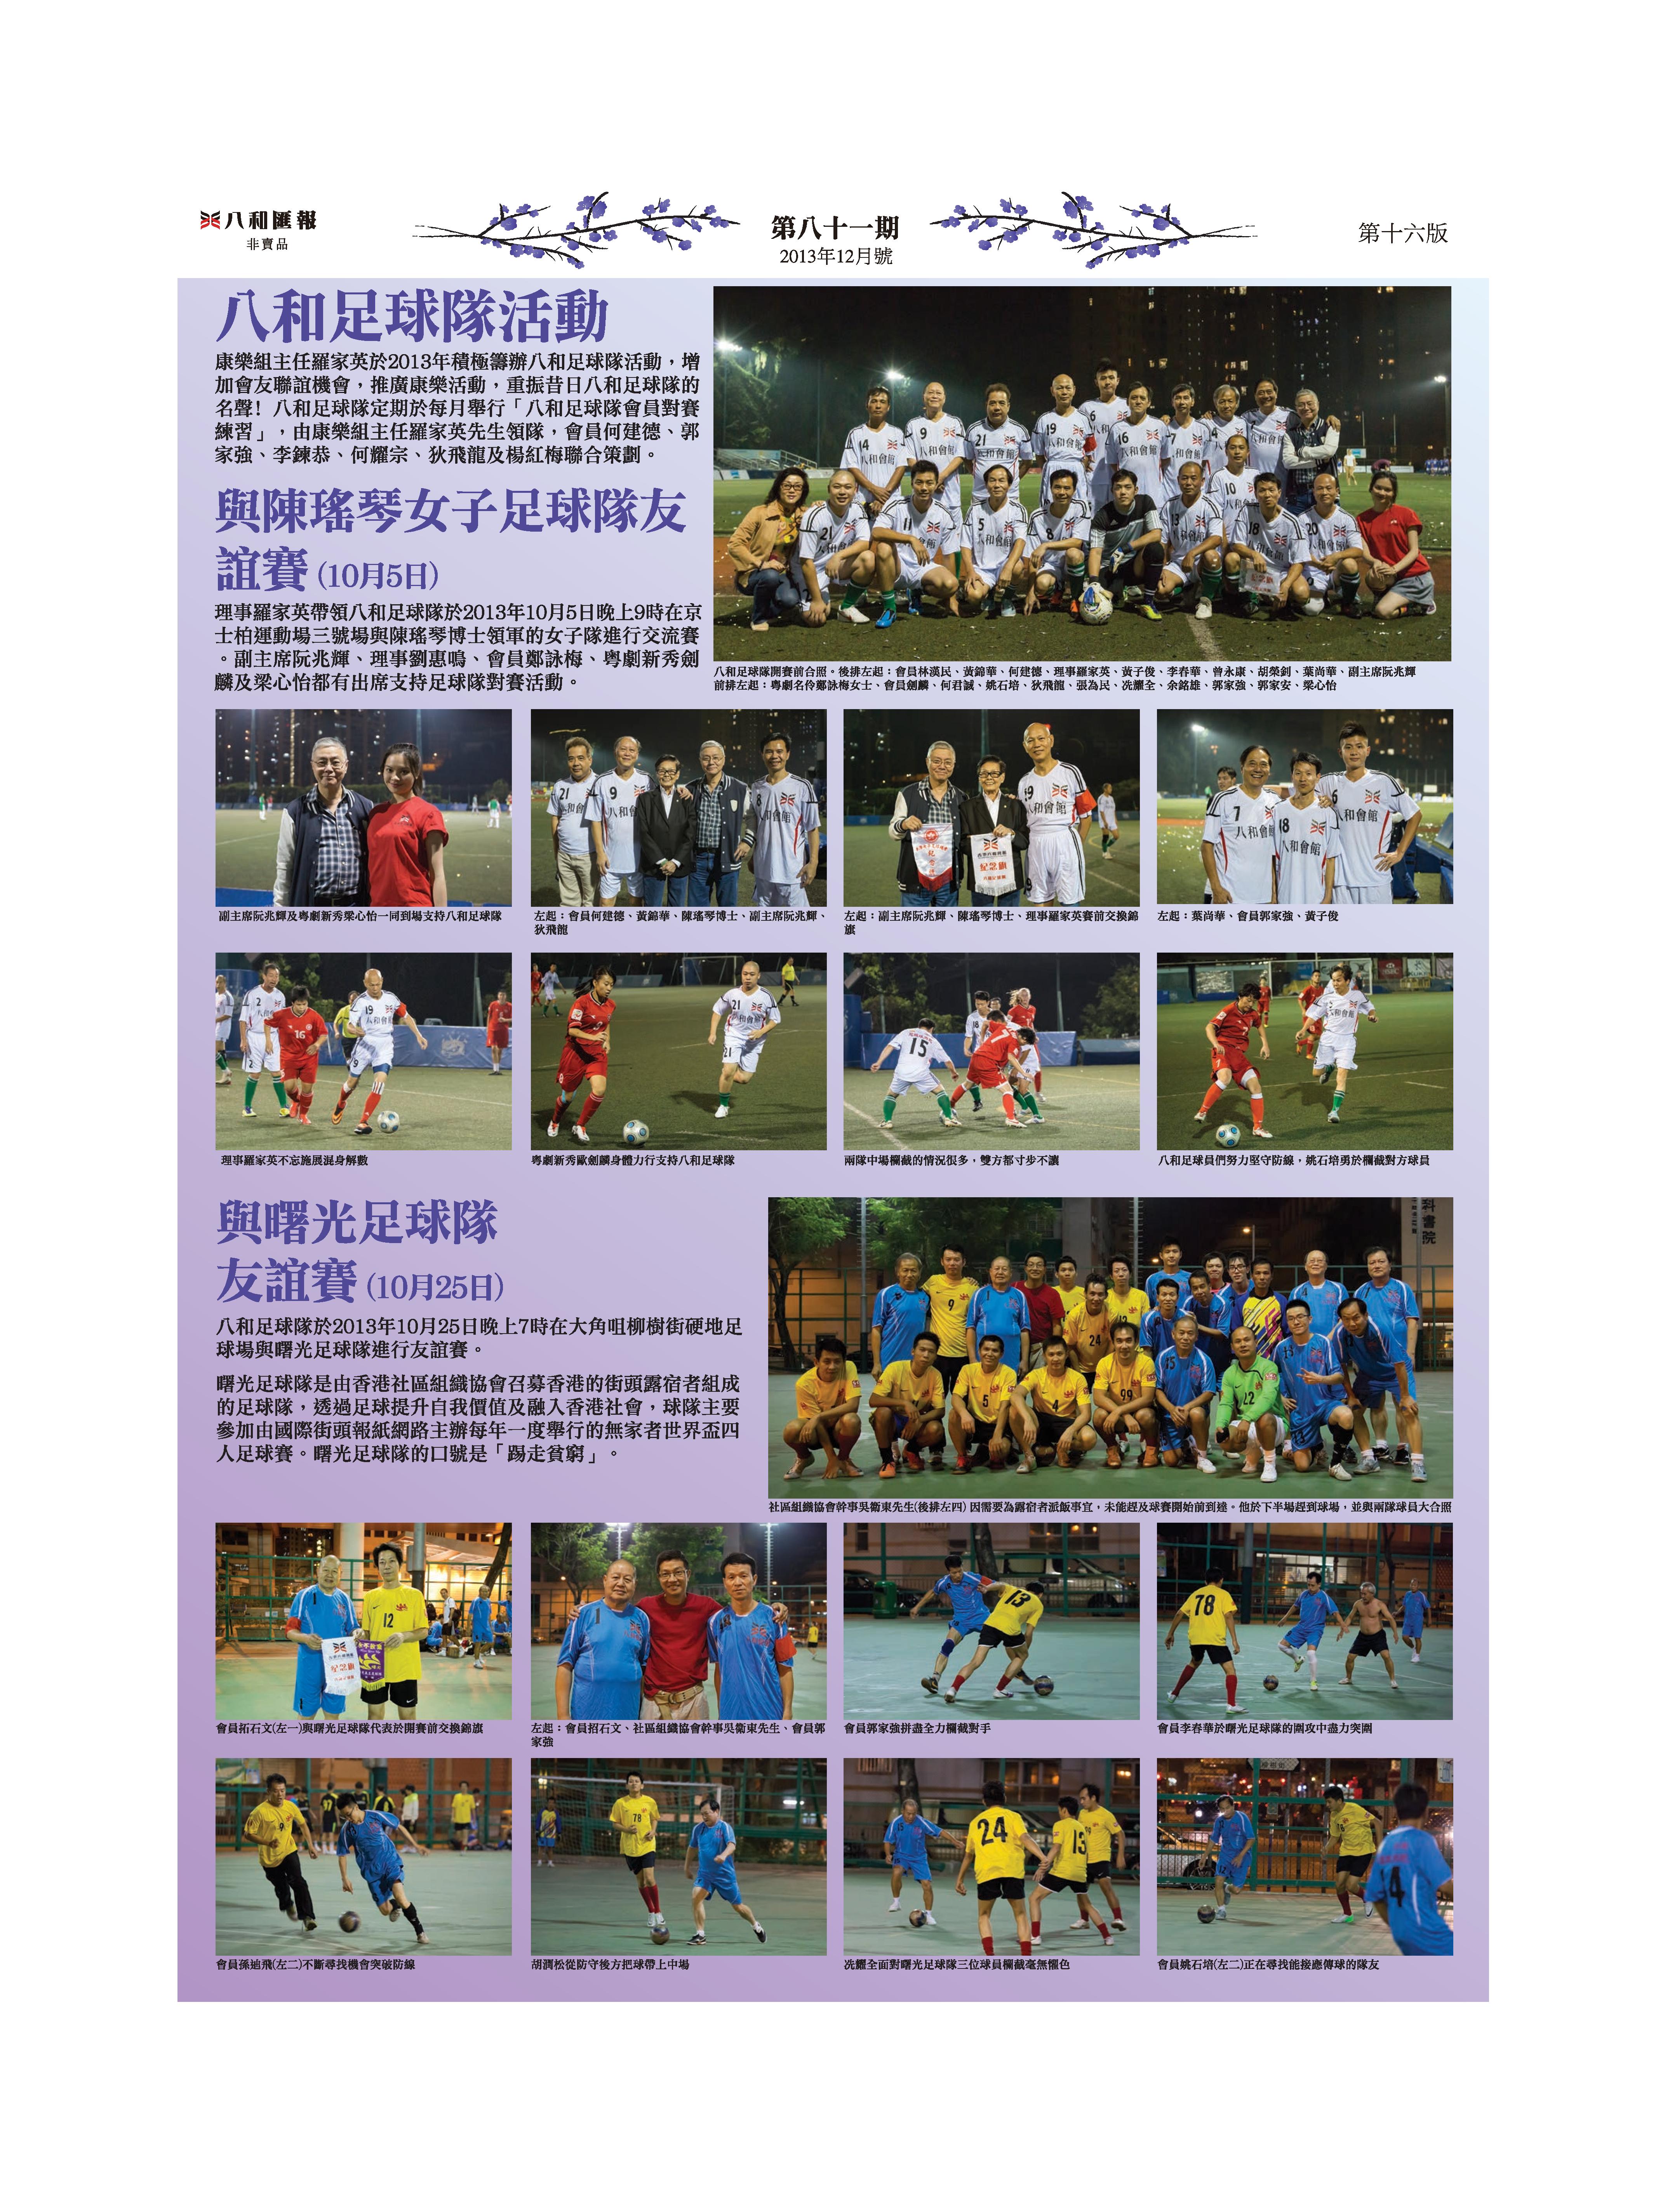 八和足球隊對陳瑤琴女子足球隊友誼賽 ｜ 八和足球隊對曙光足球隊友誼賽